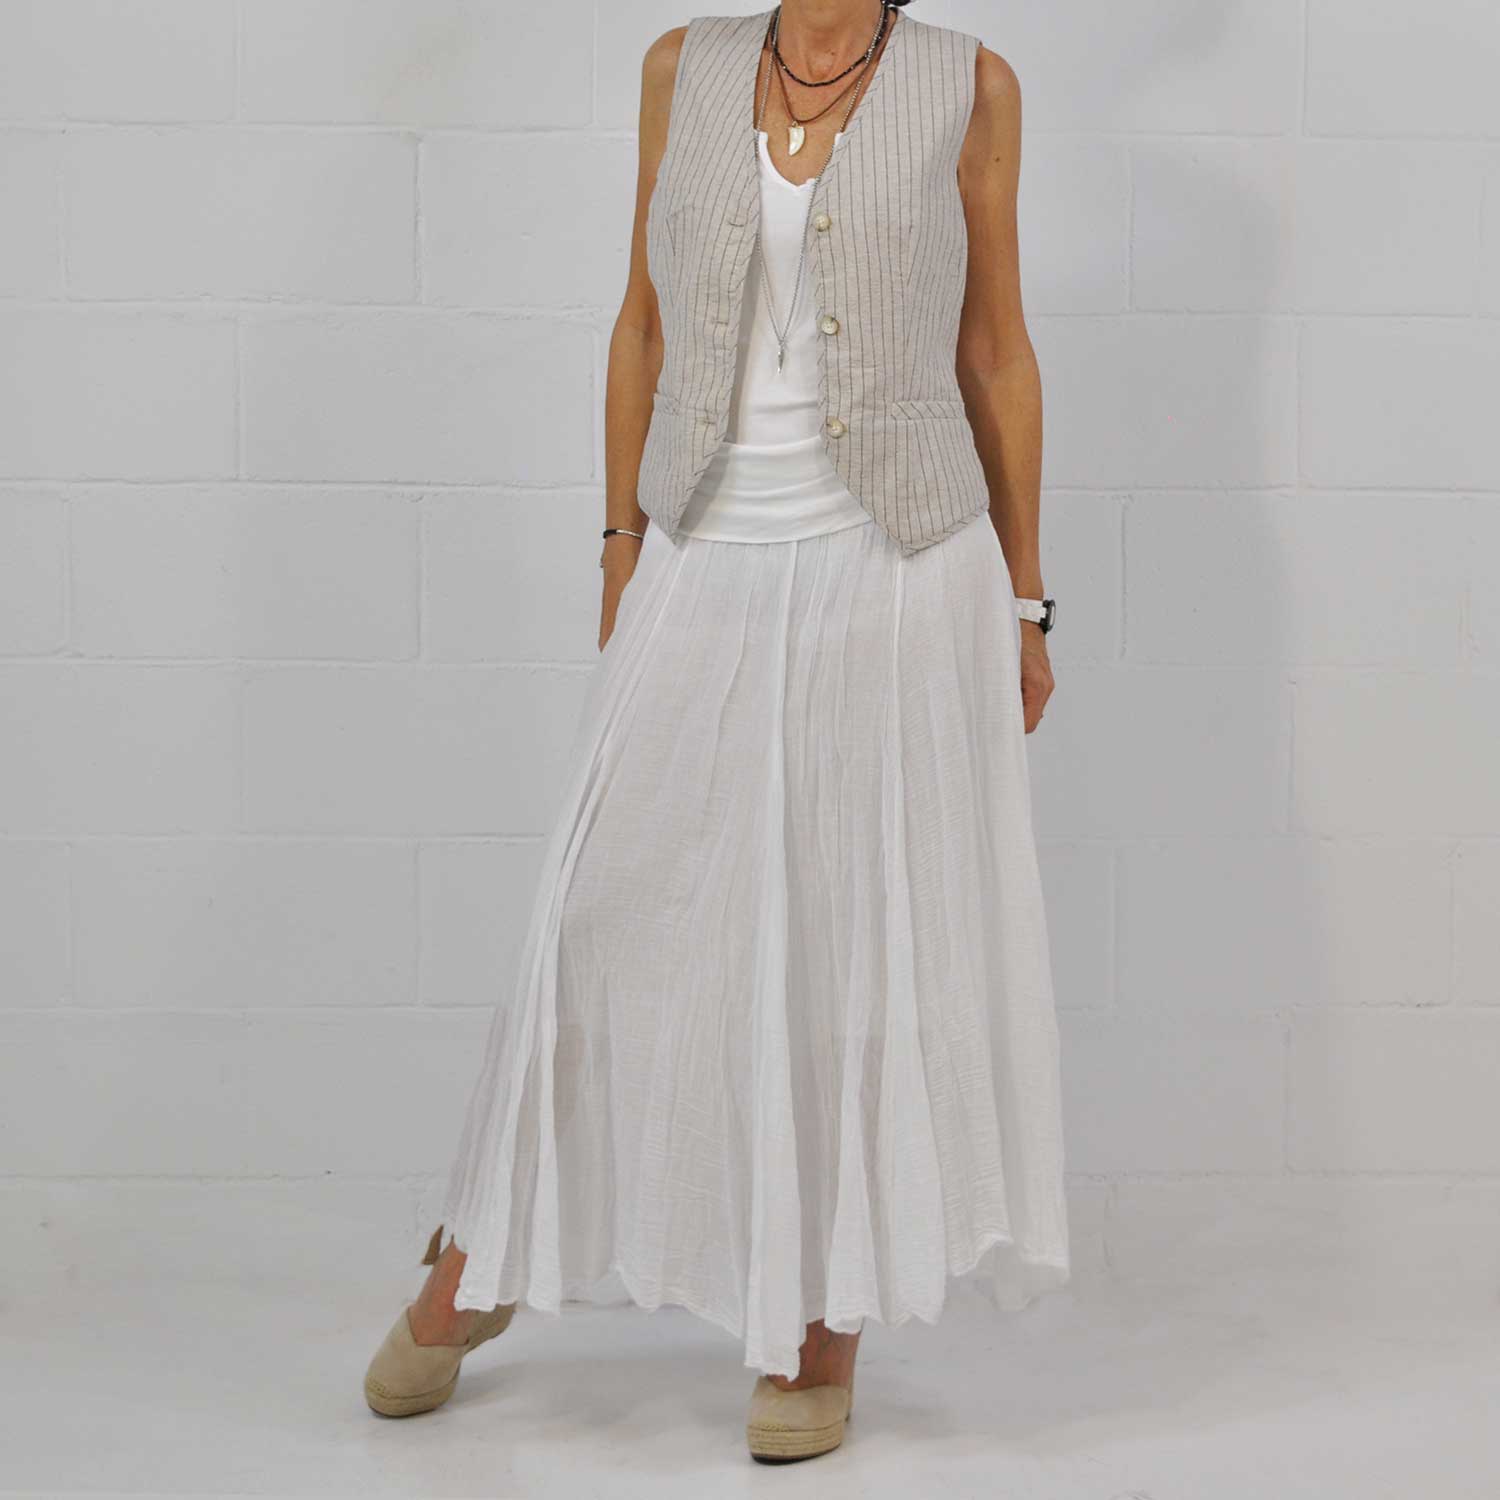 Falda larga blanca